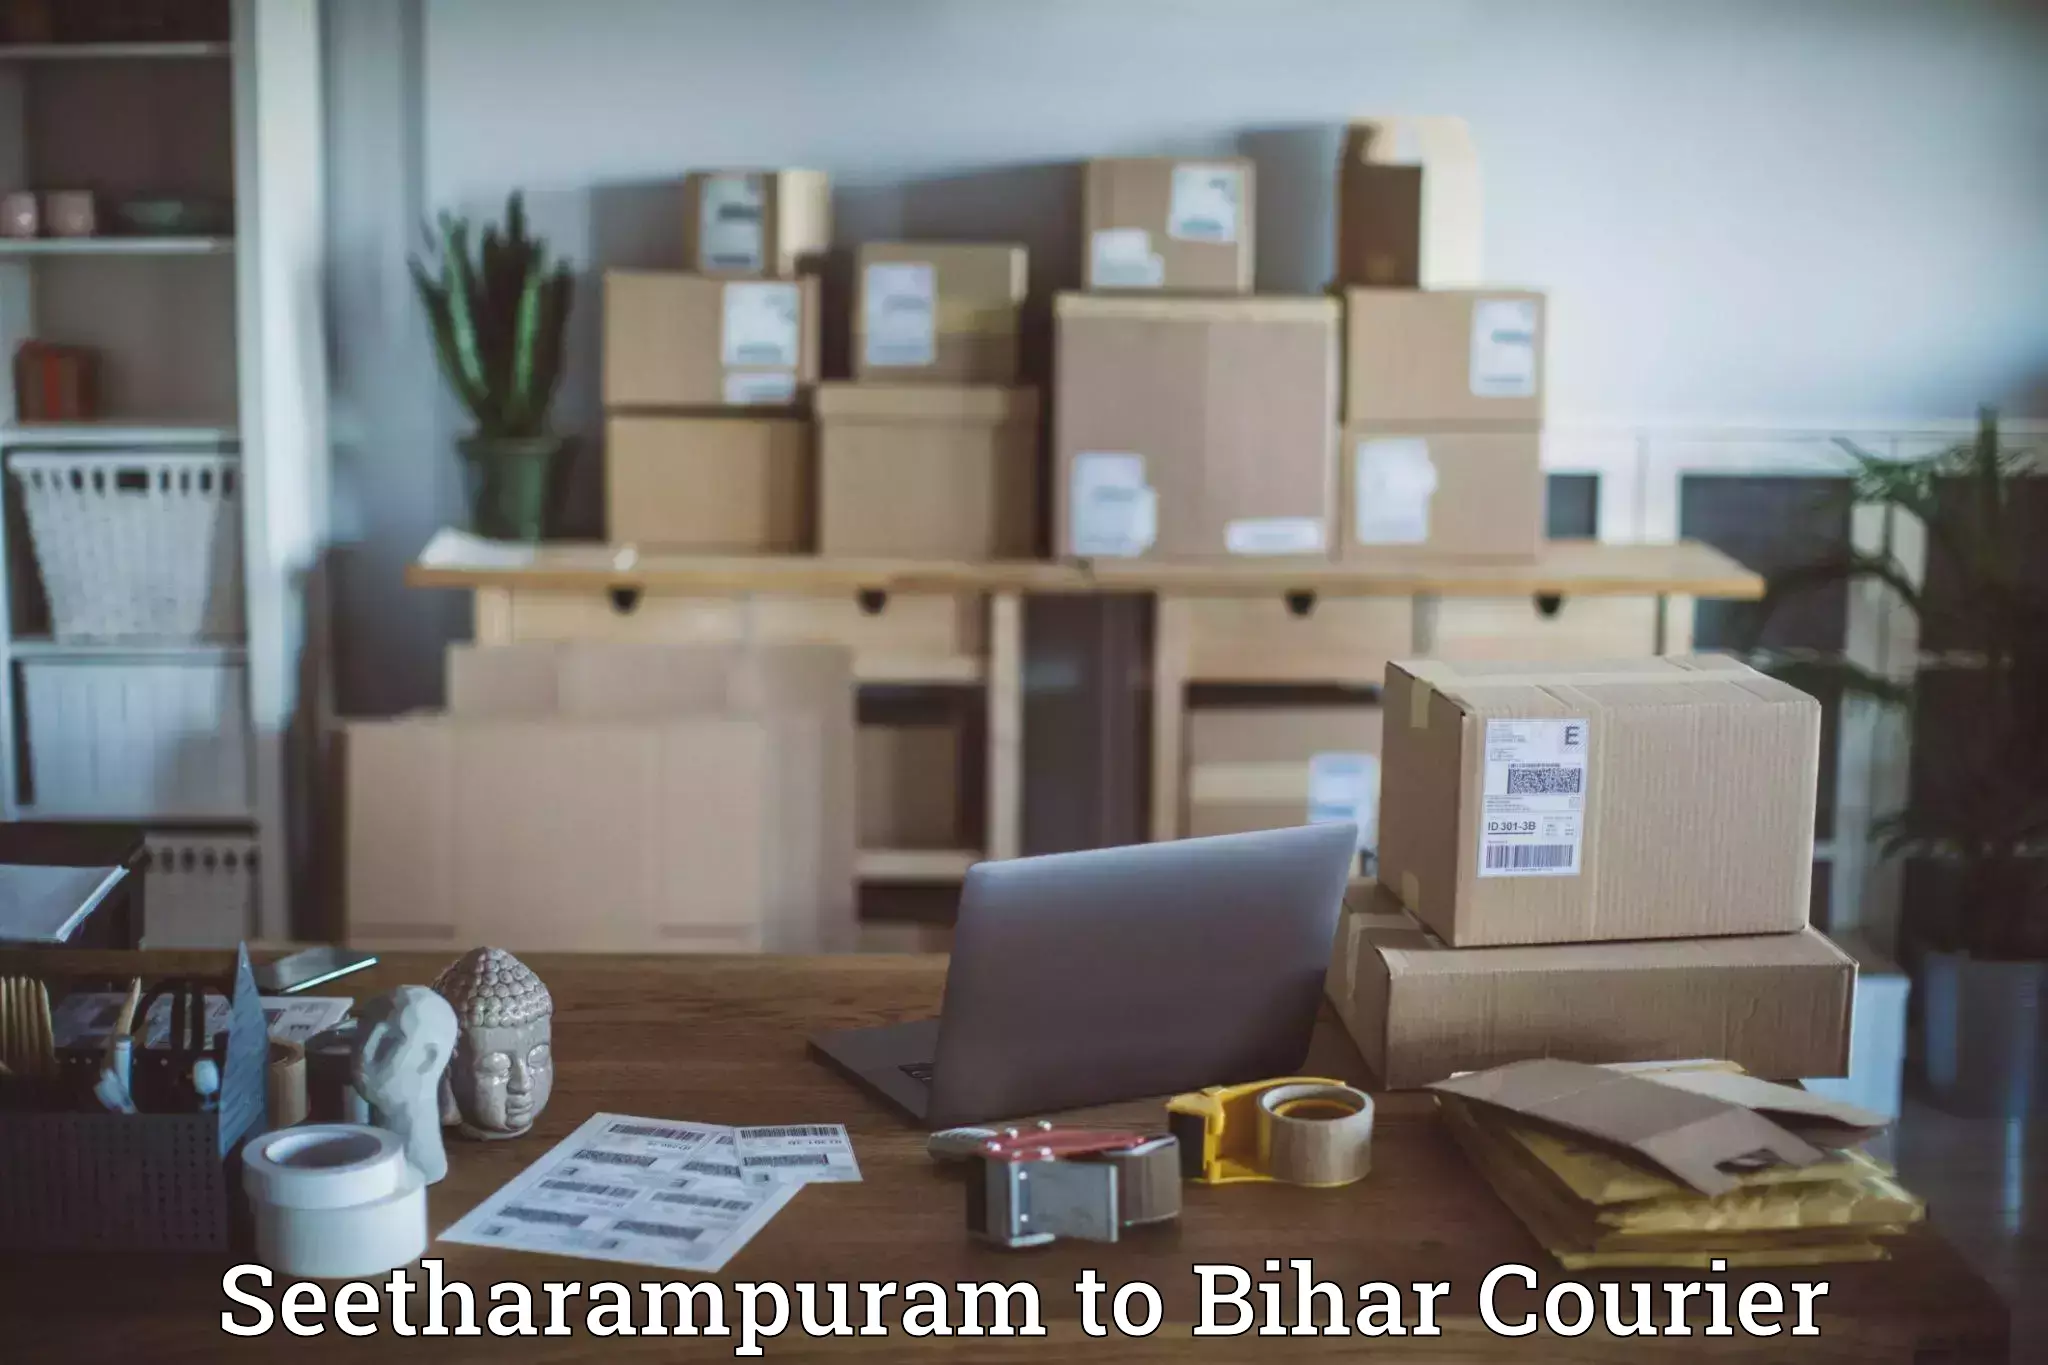 Multi-city courier Seetharampuram to Dinara